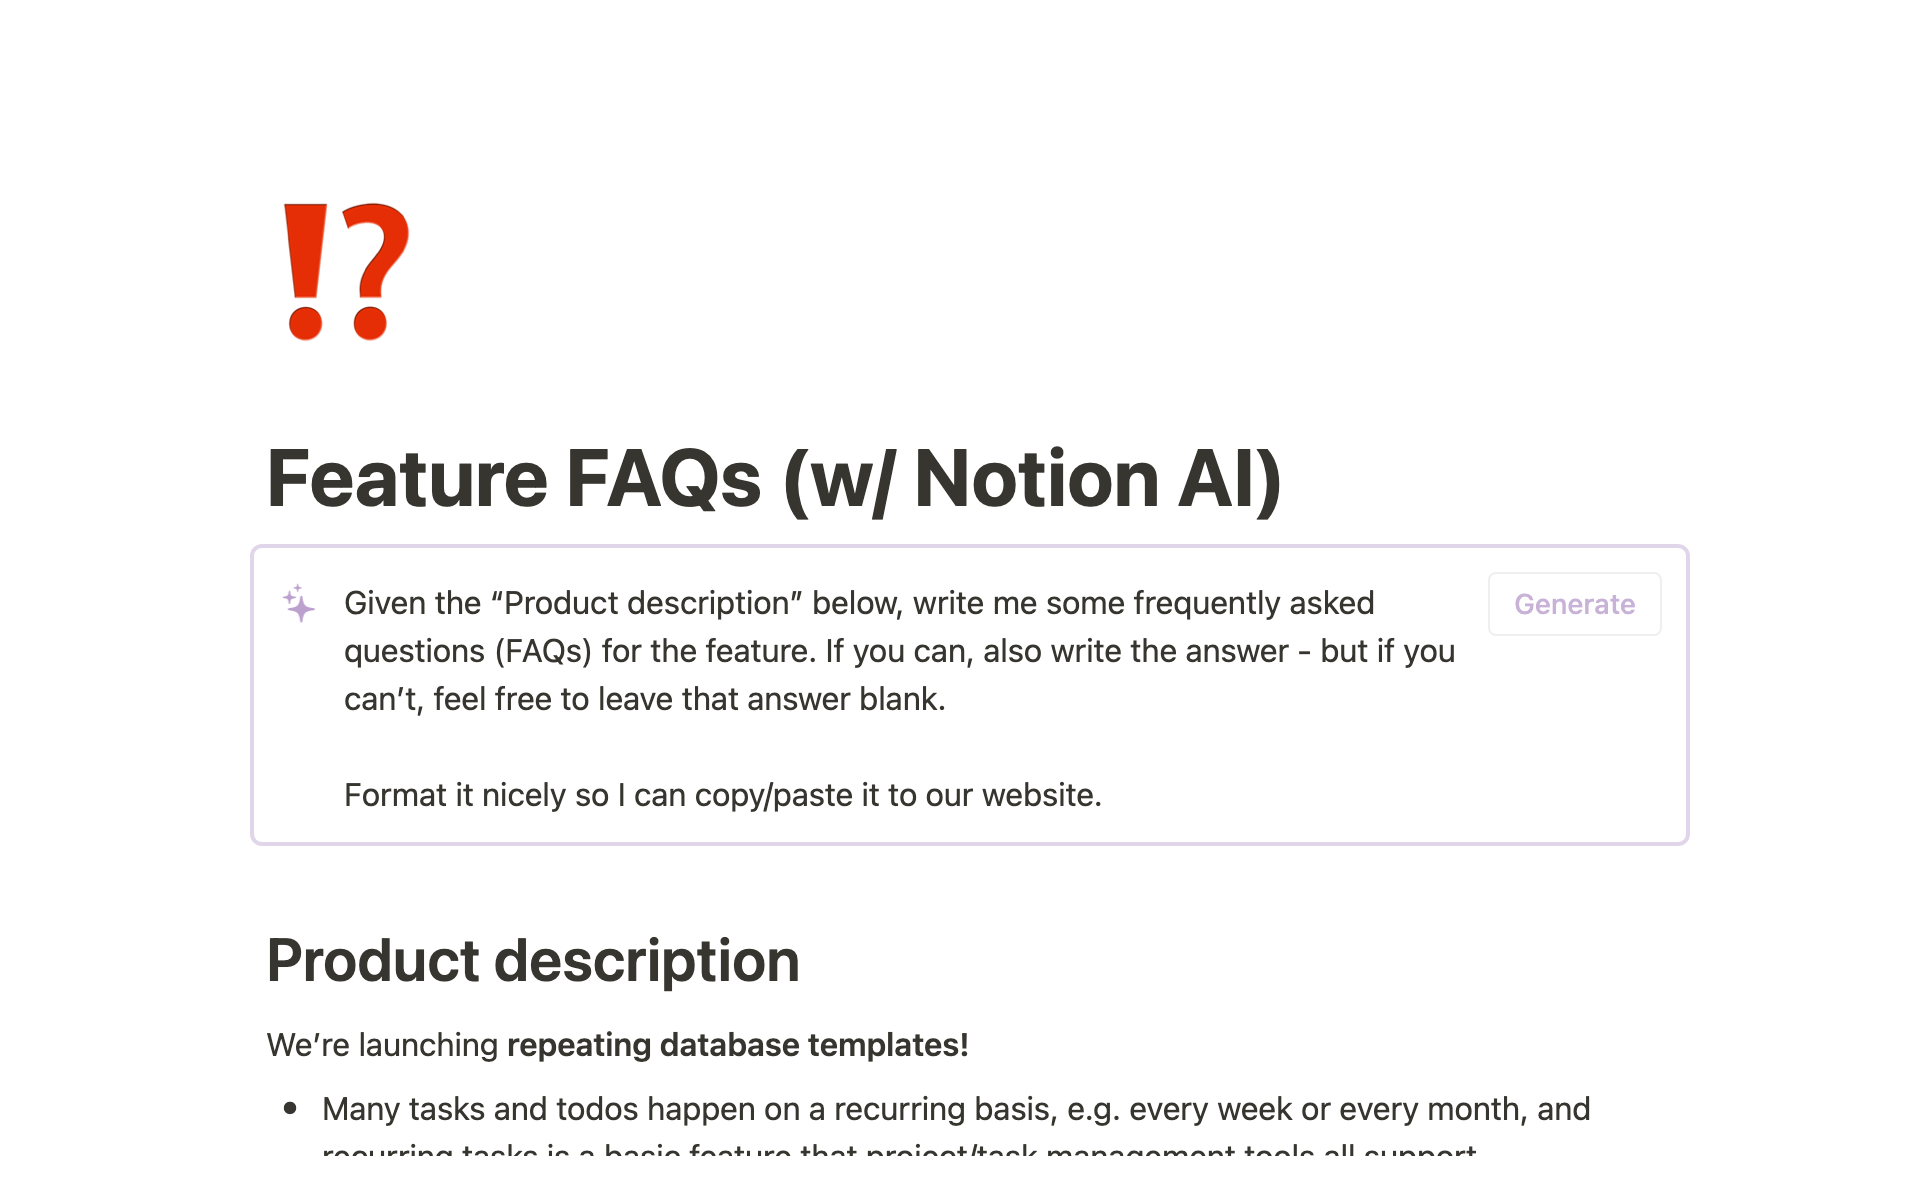 Aperçu du modèle de Feature FAQs (w/ Notion AI)